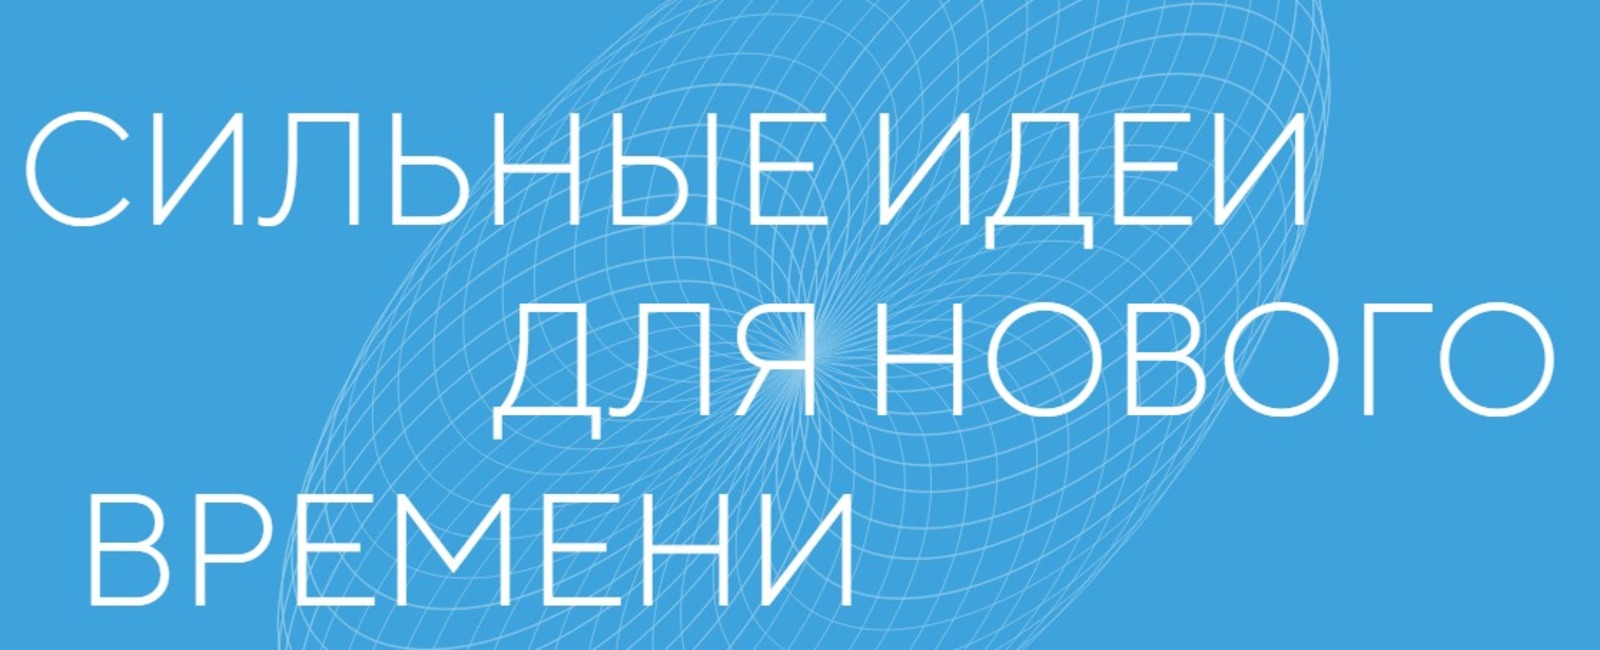 сайт форума: https://ideas-forum.ru/ Жителям Башкирии рассказали о конкурсе «Сильные идеи для нового времени»